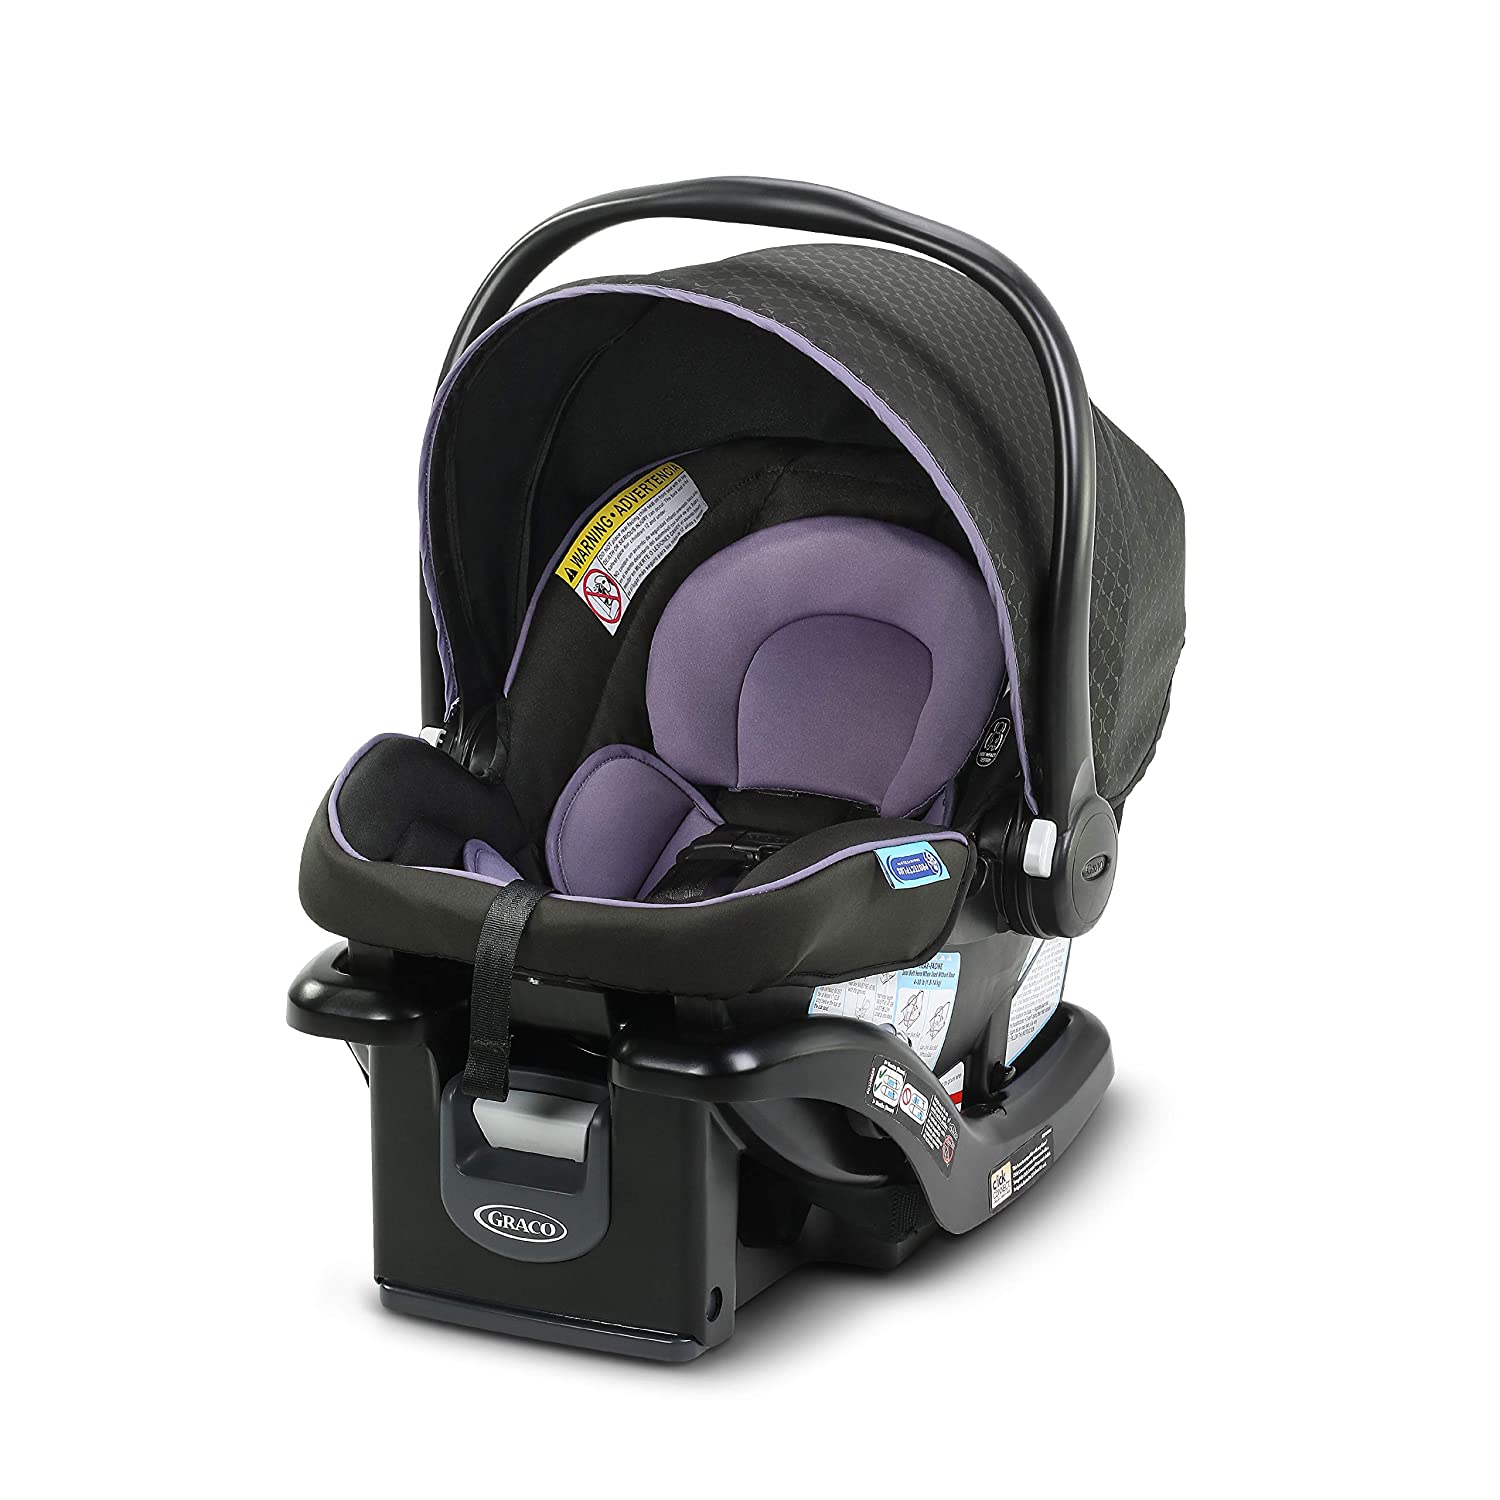  8. SnugRide Infant Car Seat, 35 Lite LX, GRACO, Color Hailey 